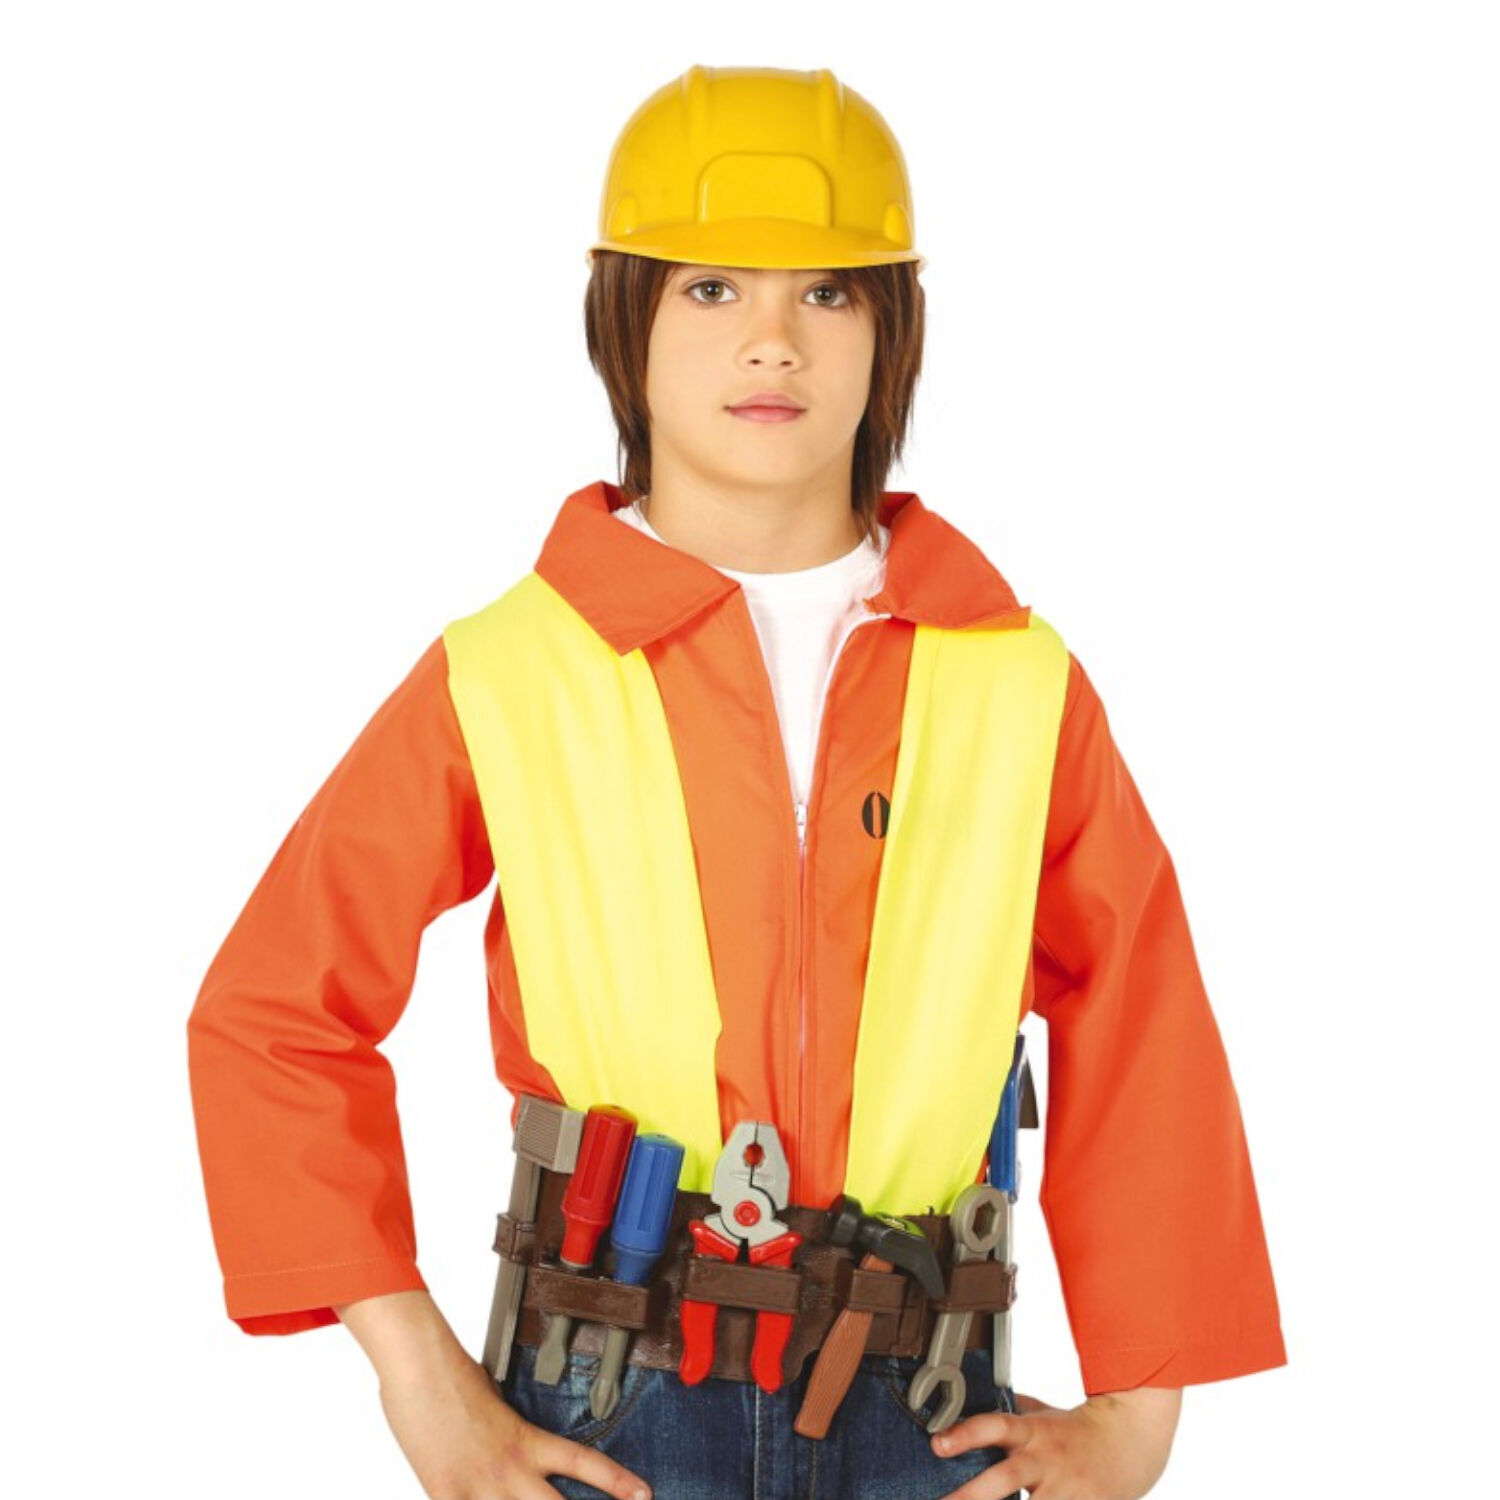 Kostüm-Set Bauarbeiter mit Helm und viel Zubehör